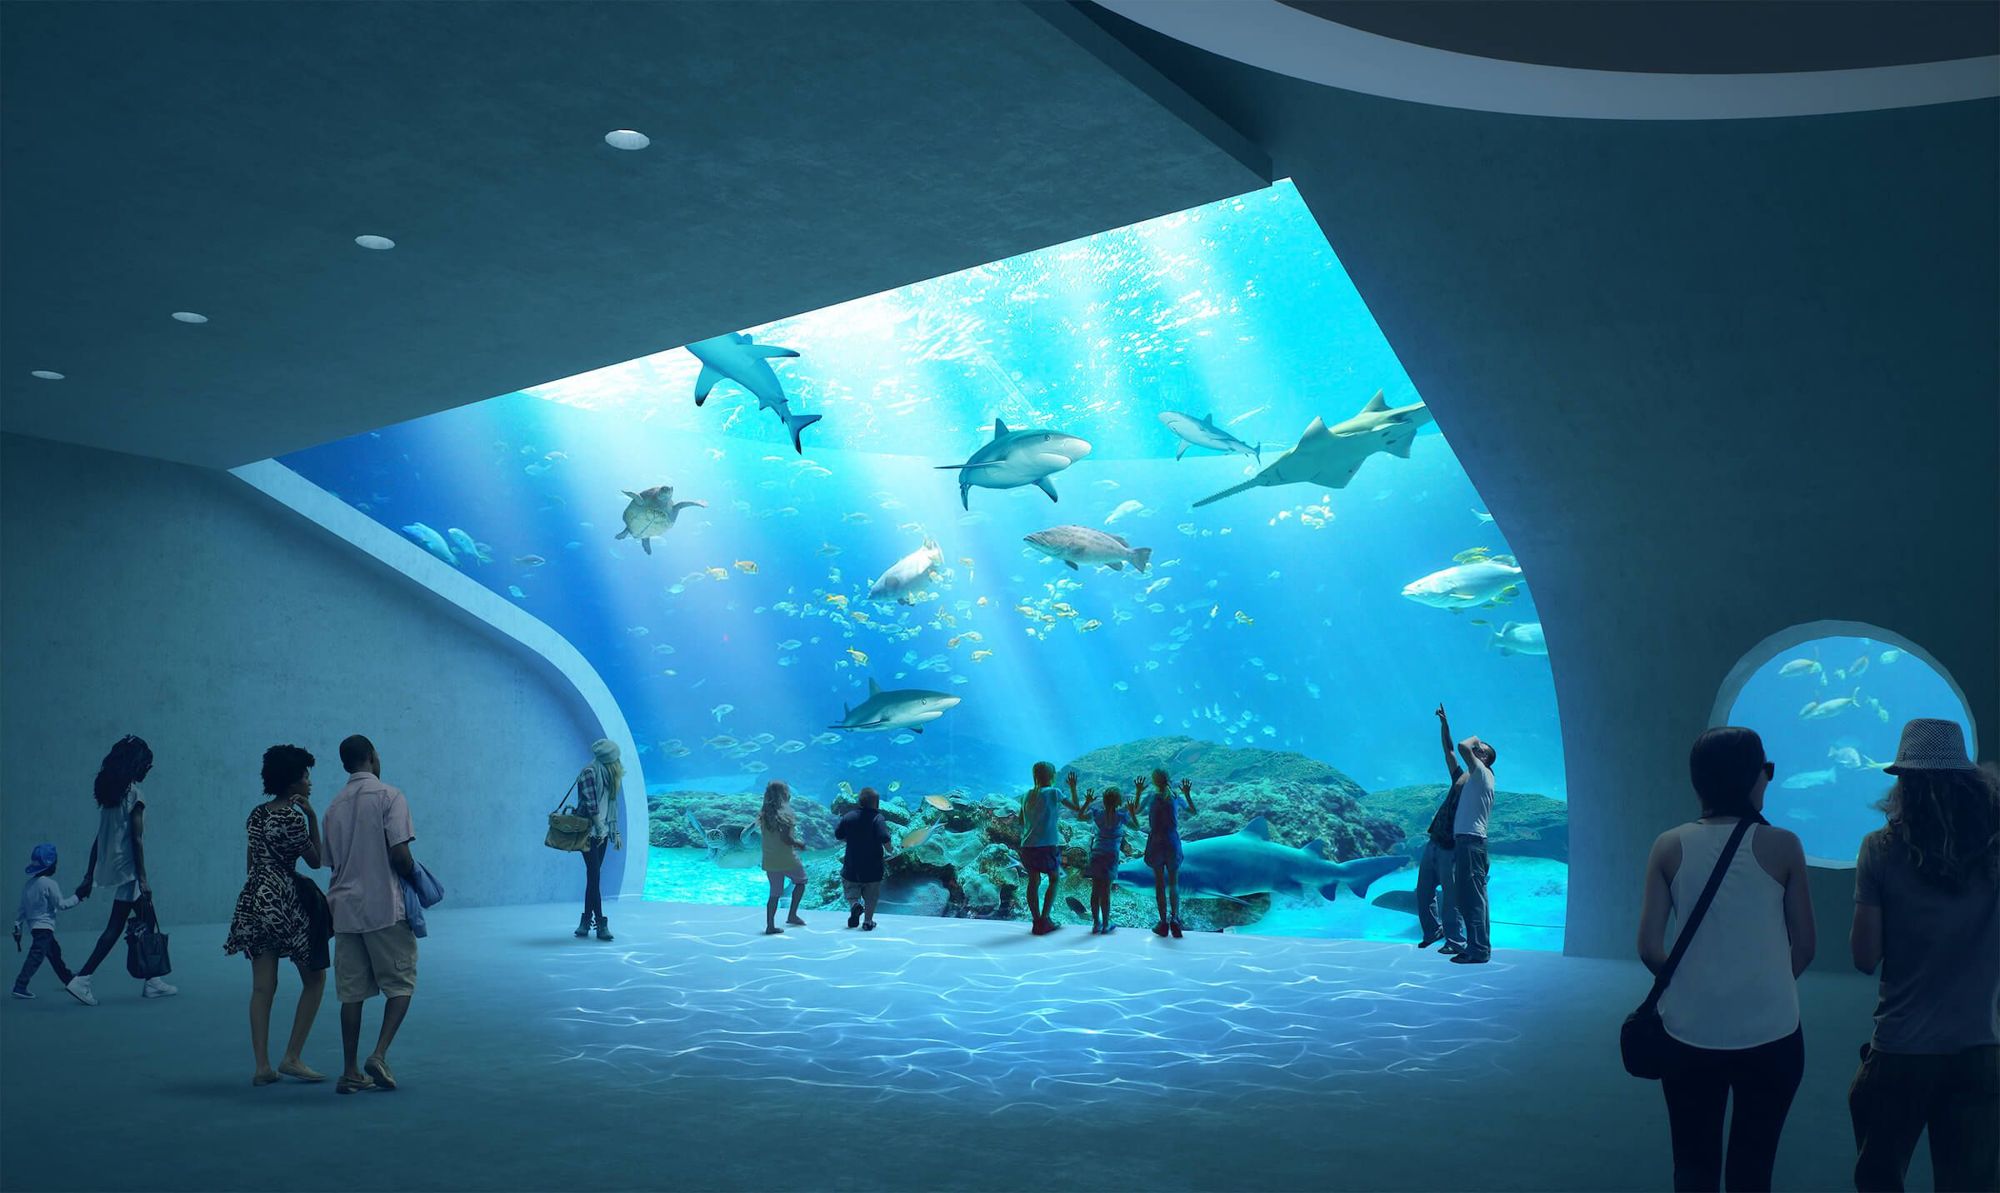 The aquarium will have more than 1 million gallons of ocean habitat.